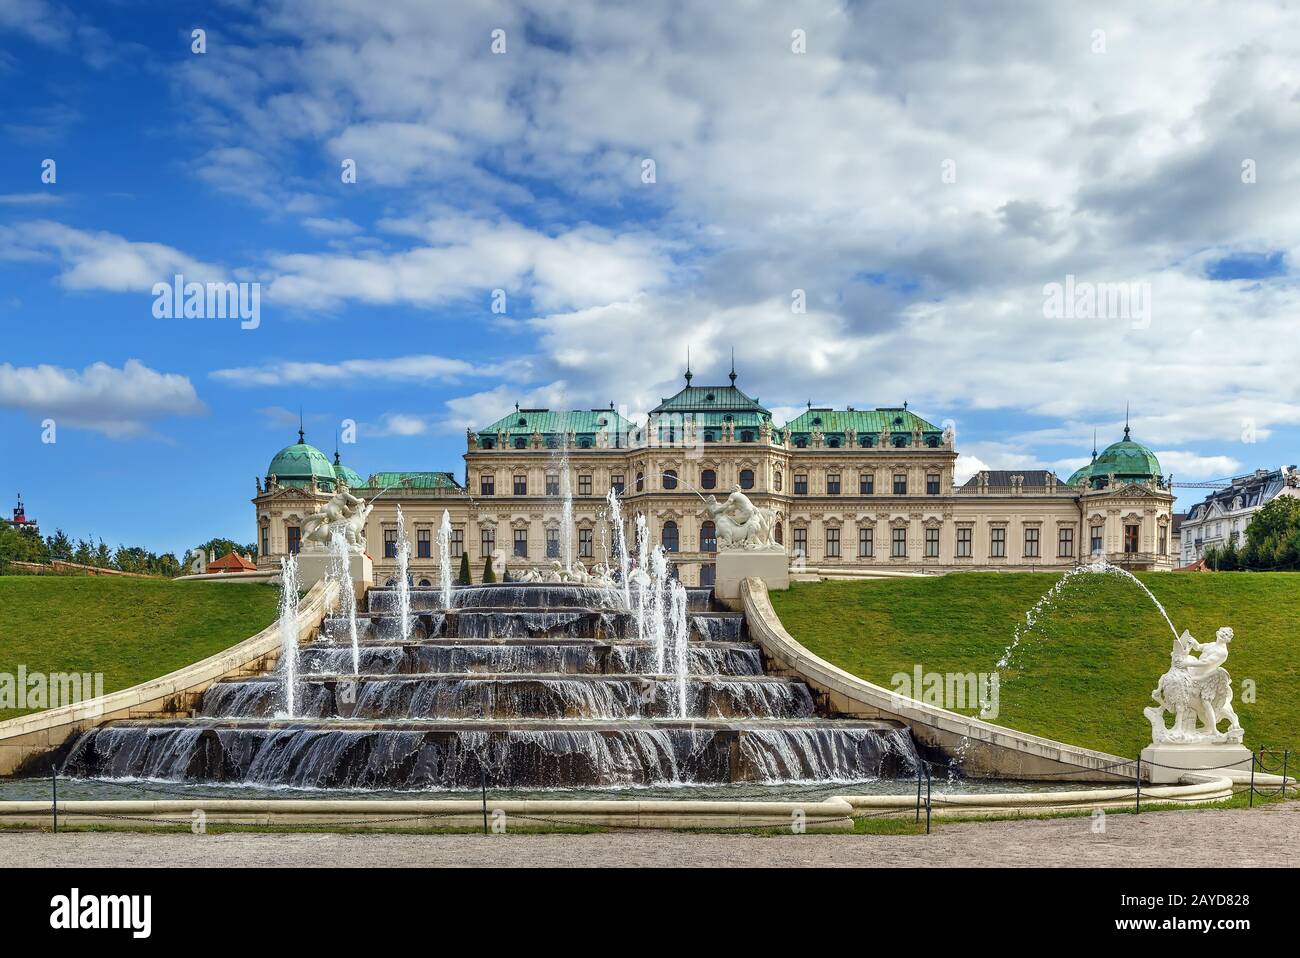 Fountain in Belvedere, Vienna Stock Photo